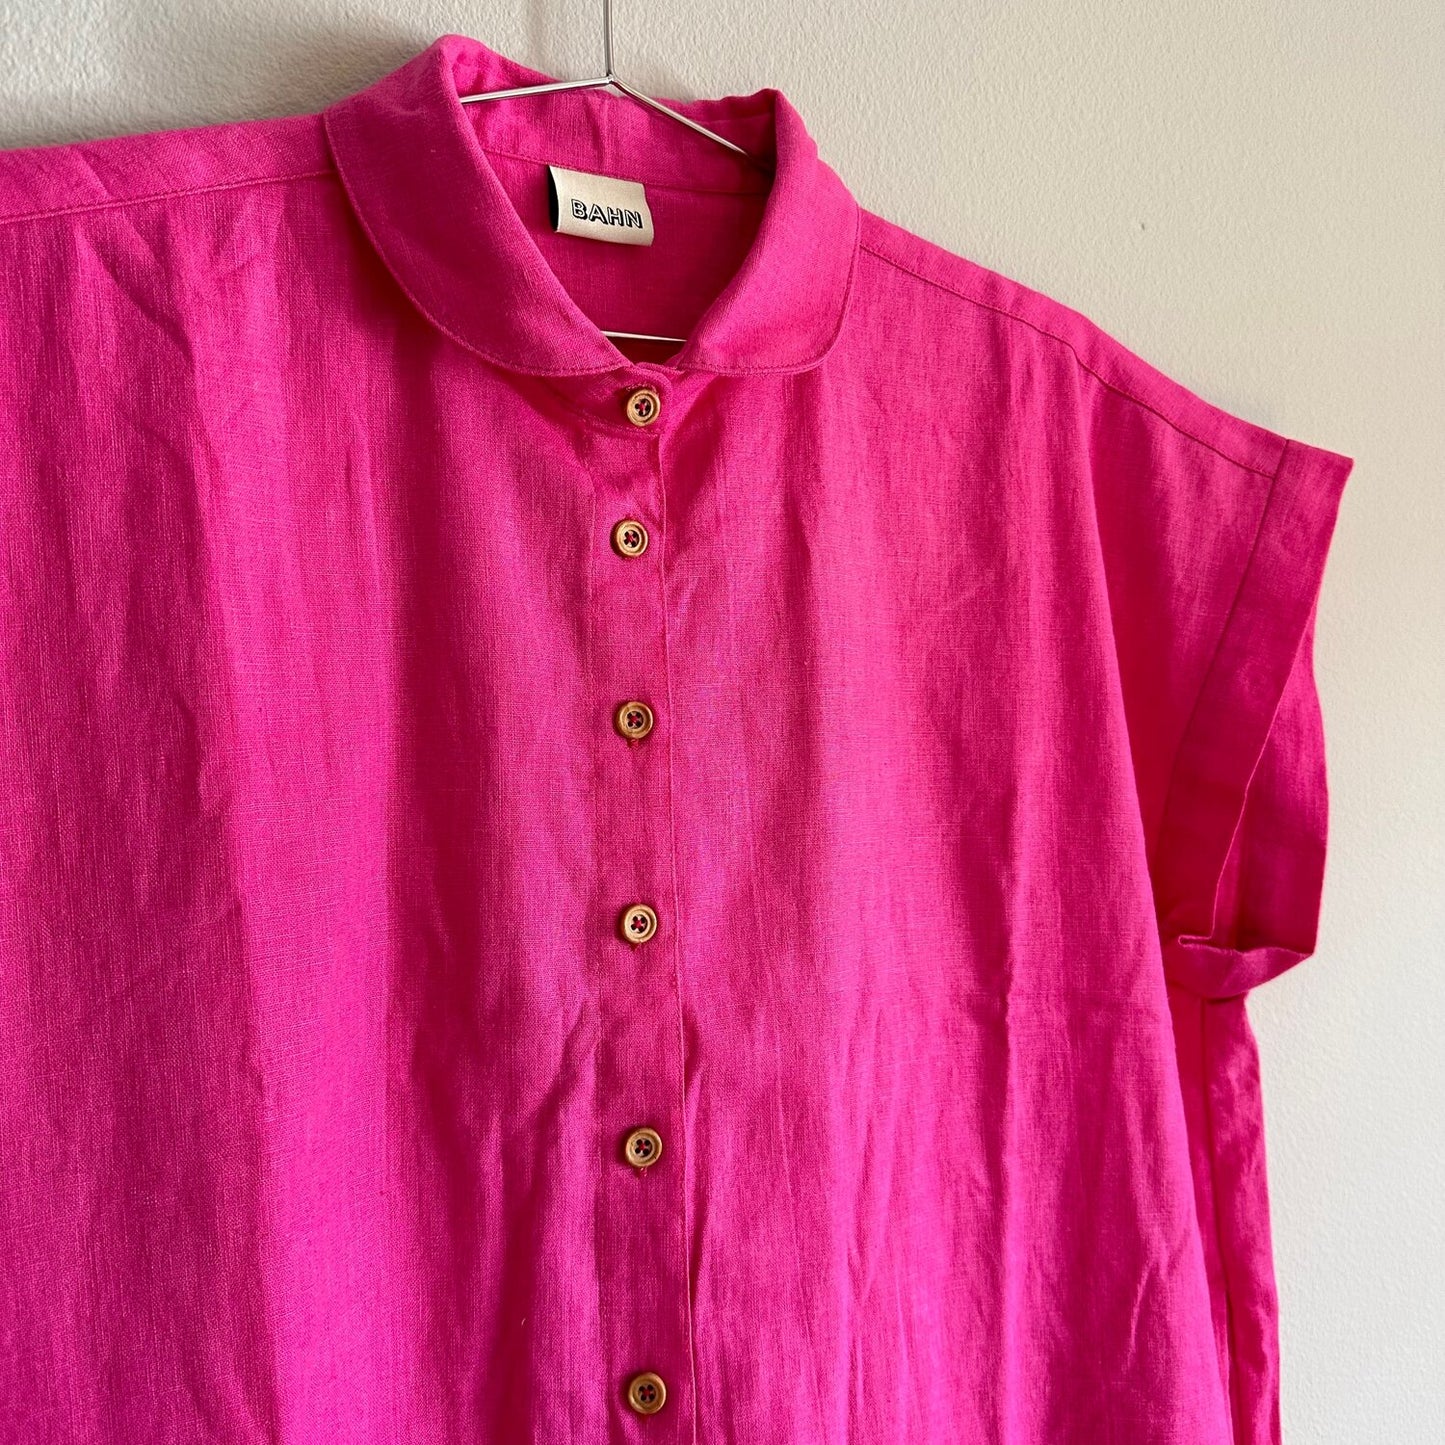 Willamette Fuschia Linen Shirt Dress - SZ OSP